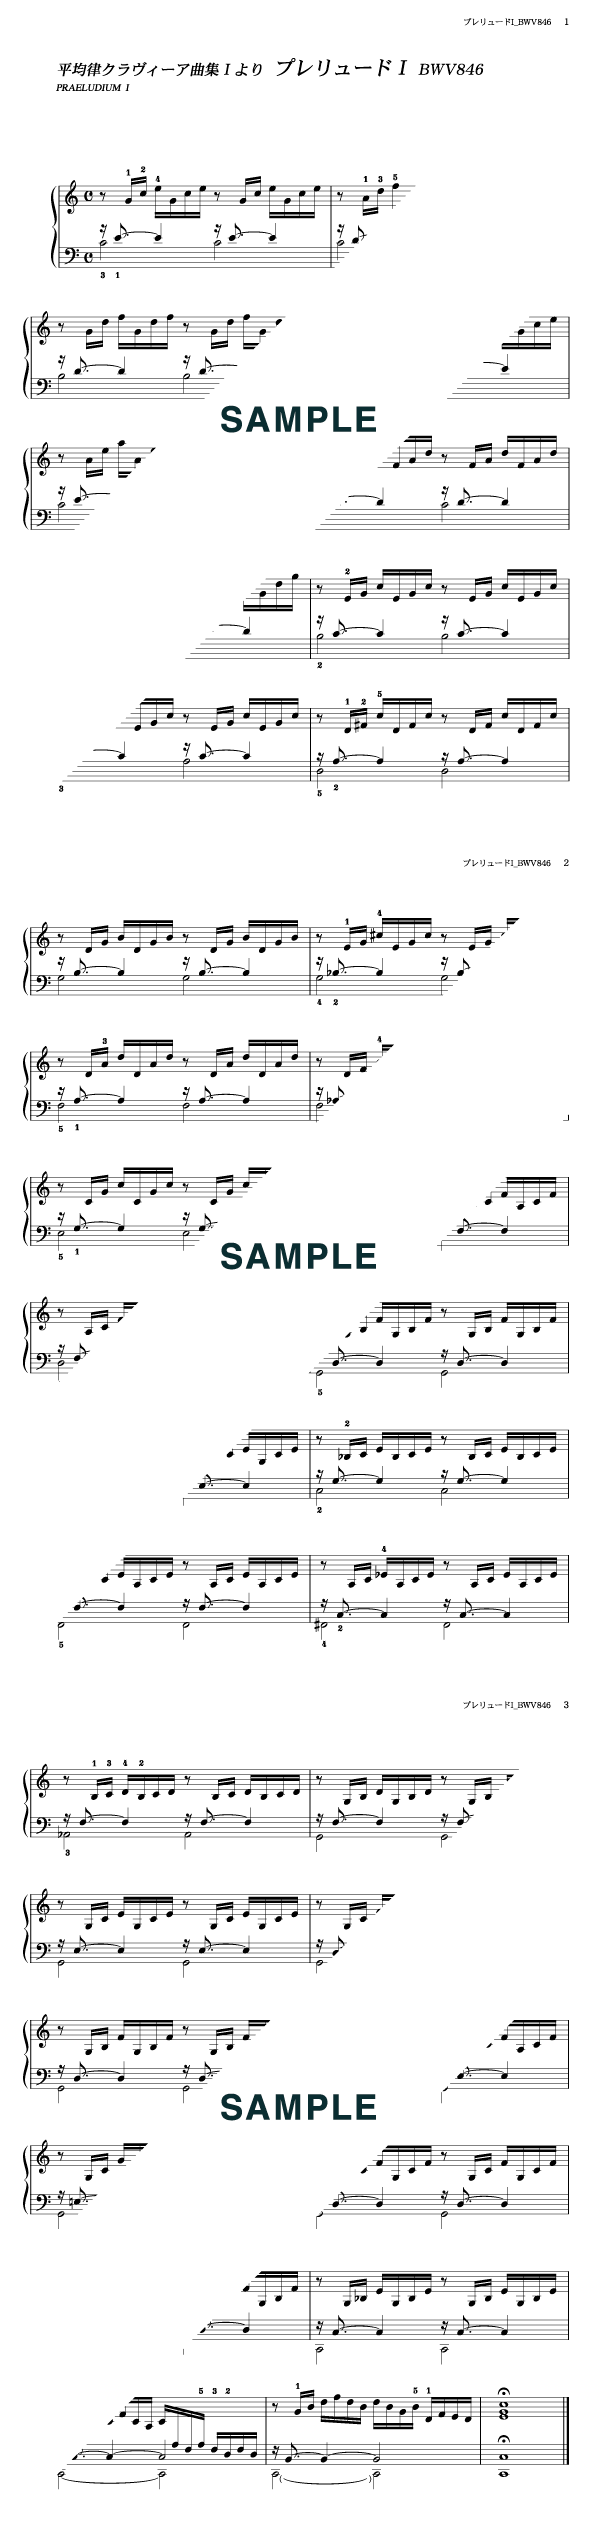 楽譜】平均律クラヴィーア曲集1より プレリュードI BWV846 / J.S.